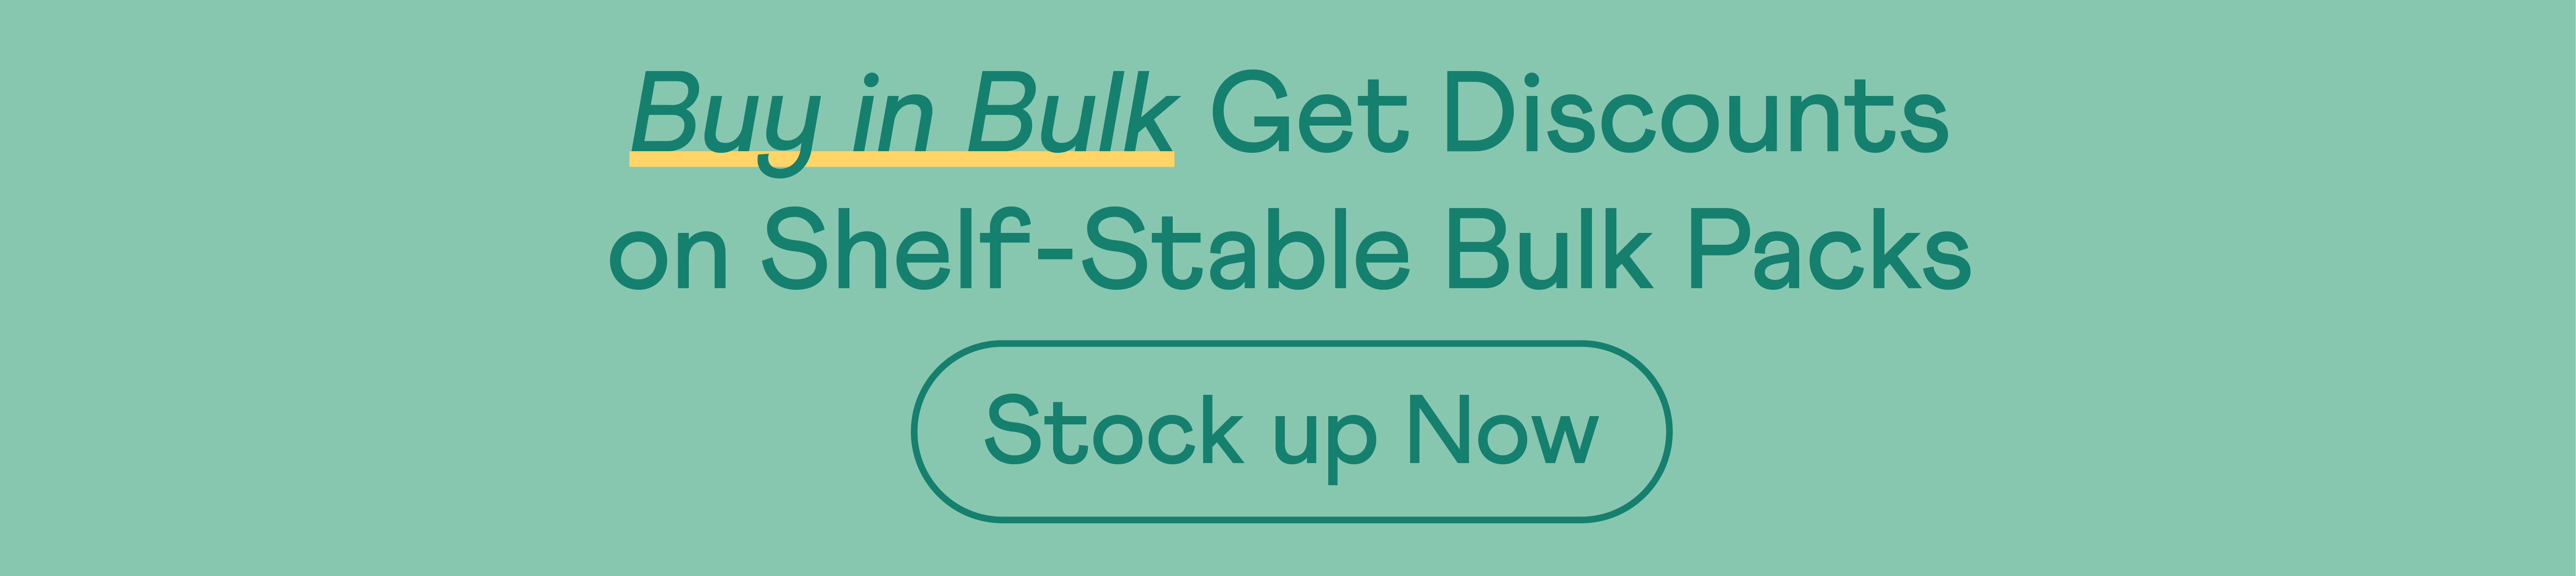 Buy in Bulk. Get Discount on Shelf-Stable Bulk Packs.